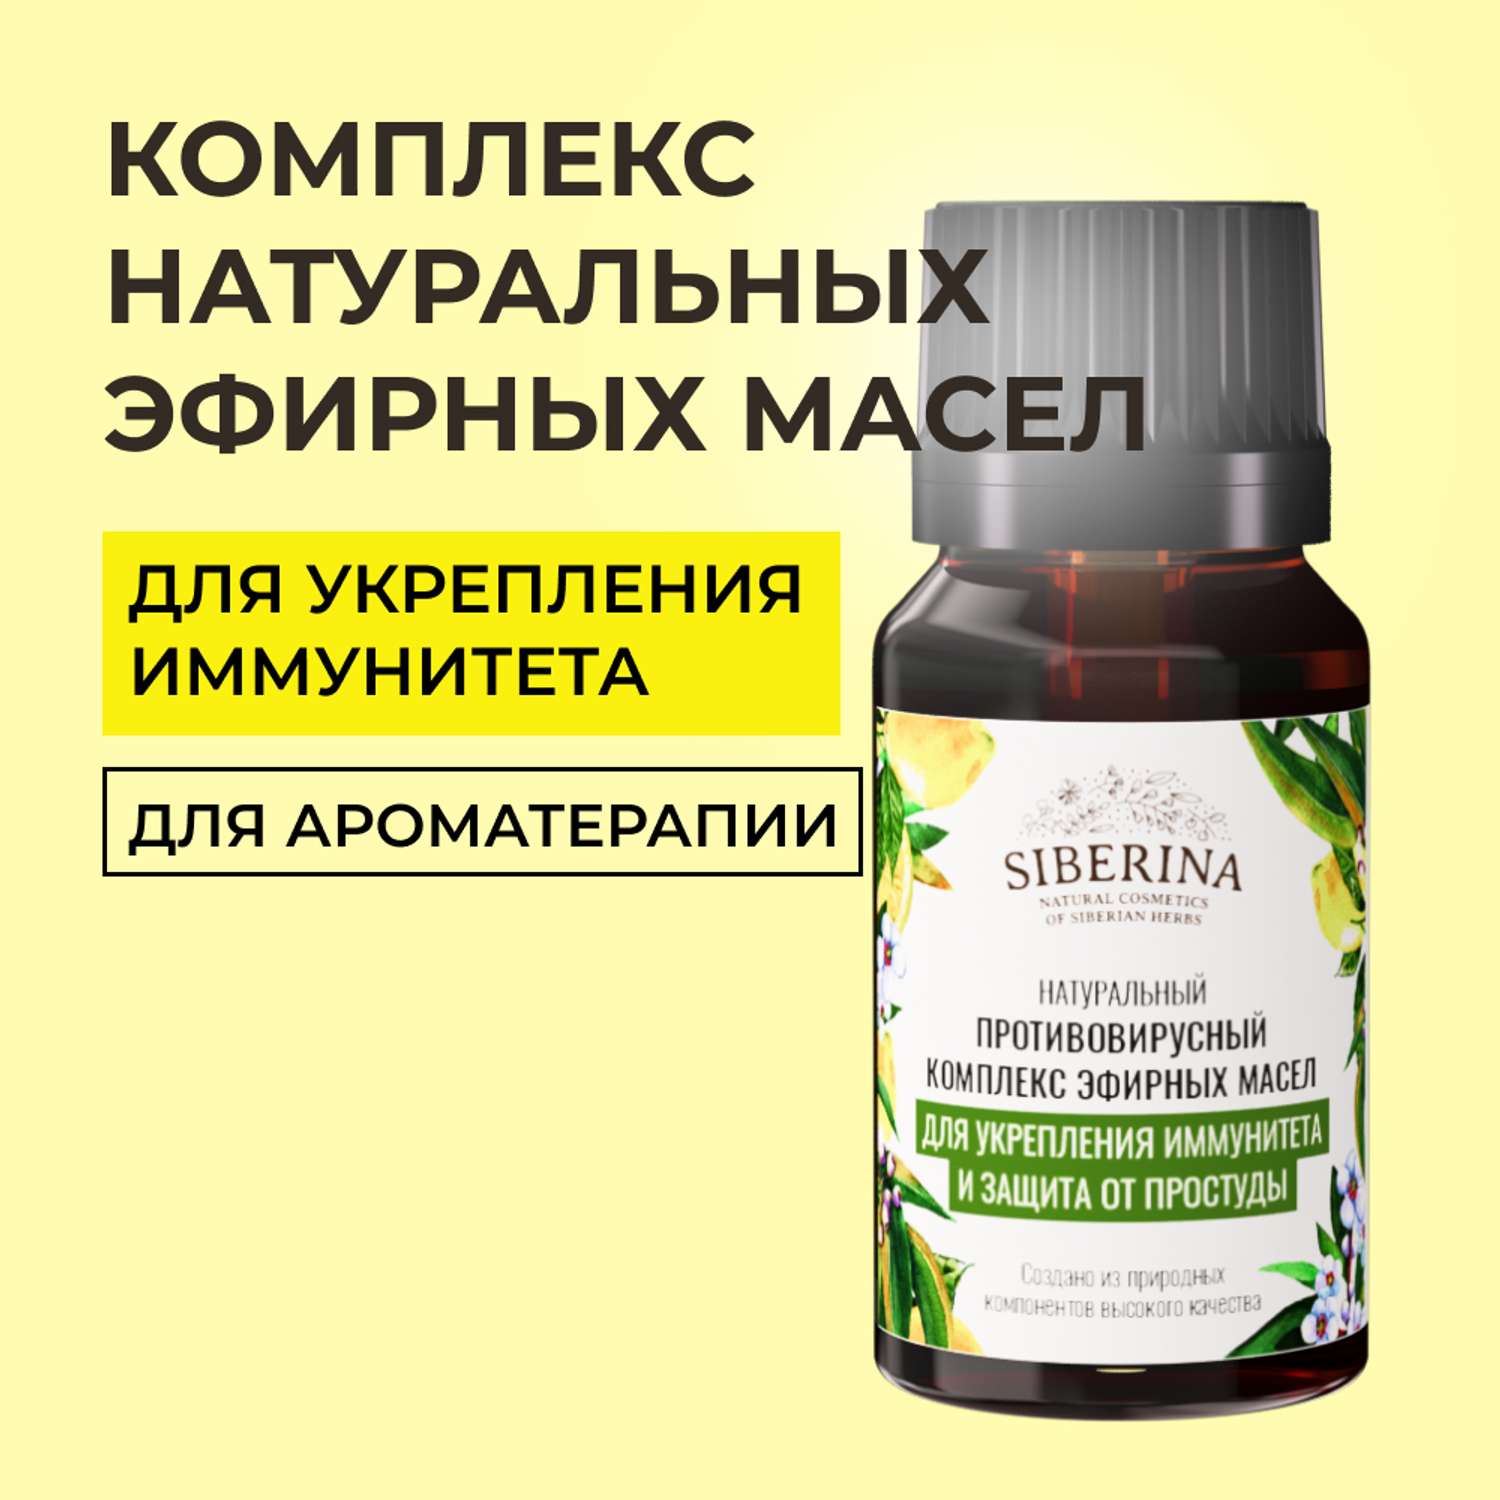 Комплекс эфирных масел Siberina натуральный «Для укрепления иммунитета и защиты от простуды» 10 мл - фото 1